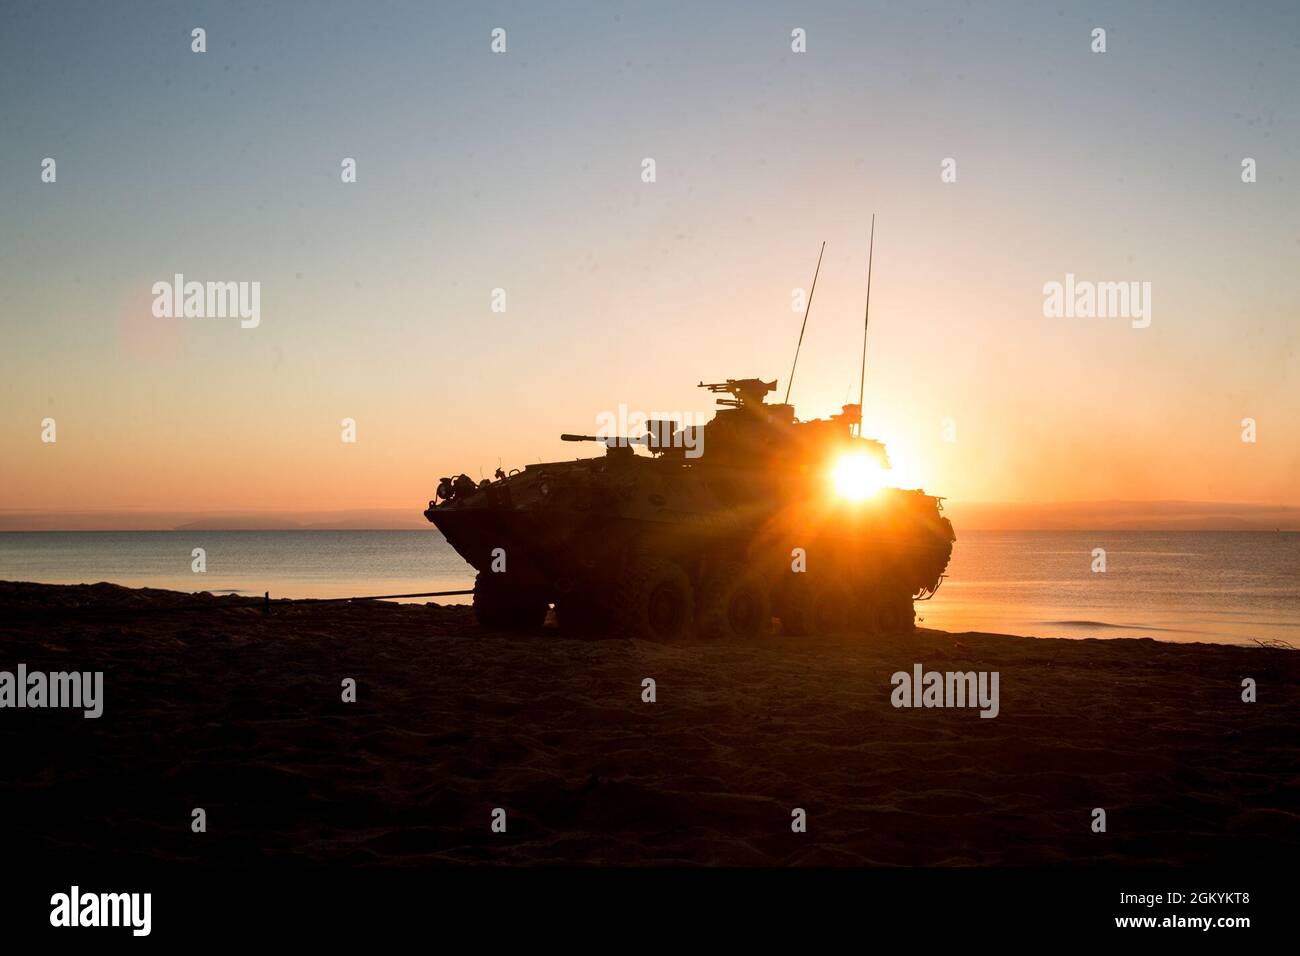 Des véhicules blindés légers de l'armée australienne transportent des Marines américains avec le 1er Bataillon, le 7e Régiment maritime, les commandants maritimes britanniques royaux avec 40 Commando, les soldats de l'Armée de défense autonome du Japon et les soldats du 3e Régiment australien de l'Armée australienne, lors d'un atterrissage amphibie à l'exercice Talisman Sabre 21 à Ingham, Queensland, Australie, juillet 29, 2021. Les opérations amphibies fournissent à un commandant de la Force conjointe combinée la capacité de projeter rapidement de la puissance à terre à l'appui de la réponse de crise au moment et à l'endroit souhaités. TS21 soutient l'initiative Indo-Pacific Pathways visant à faire progresser Banque D'Images